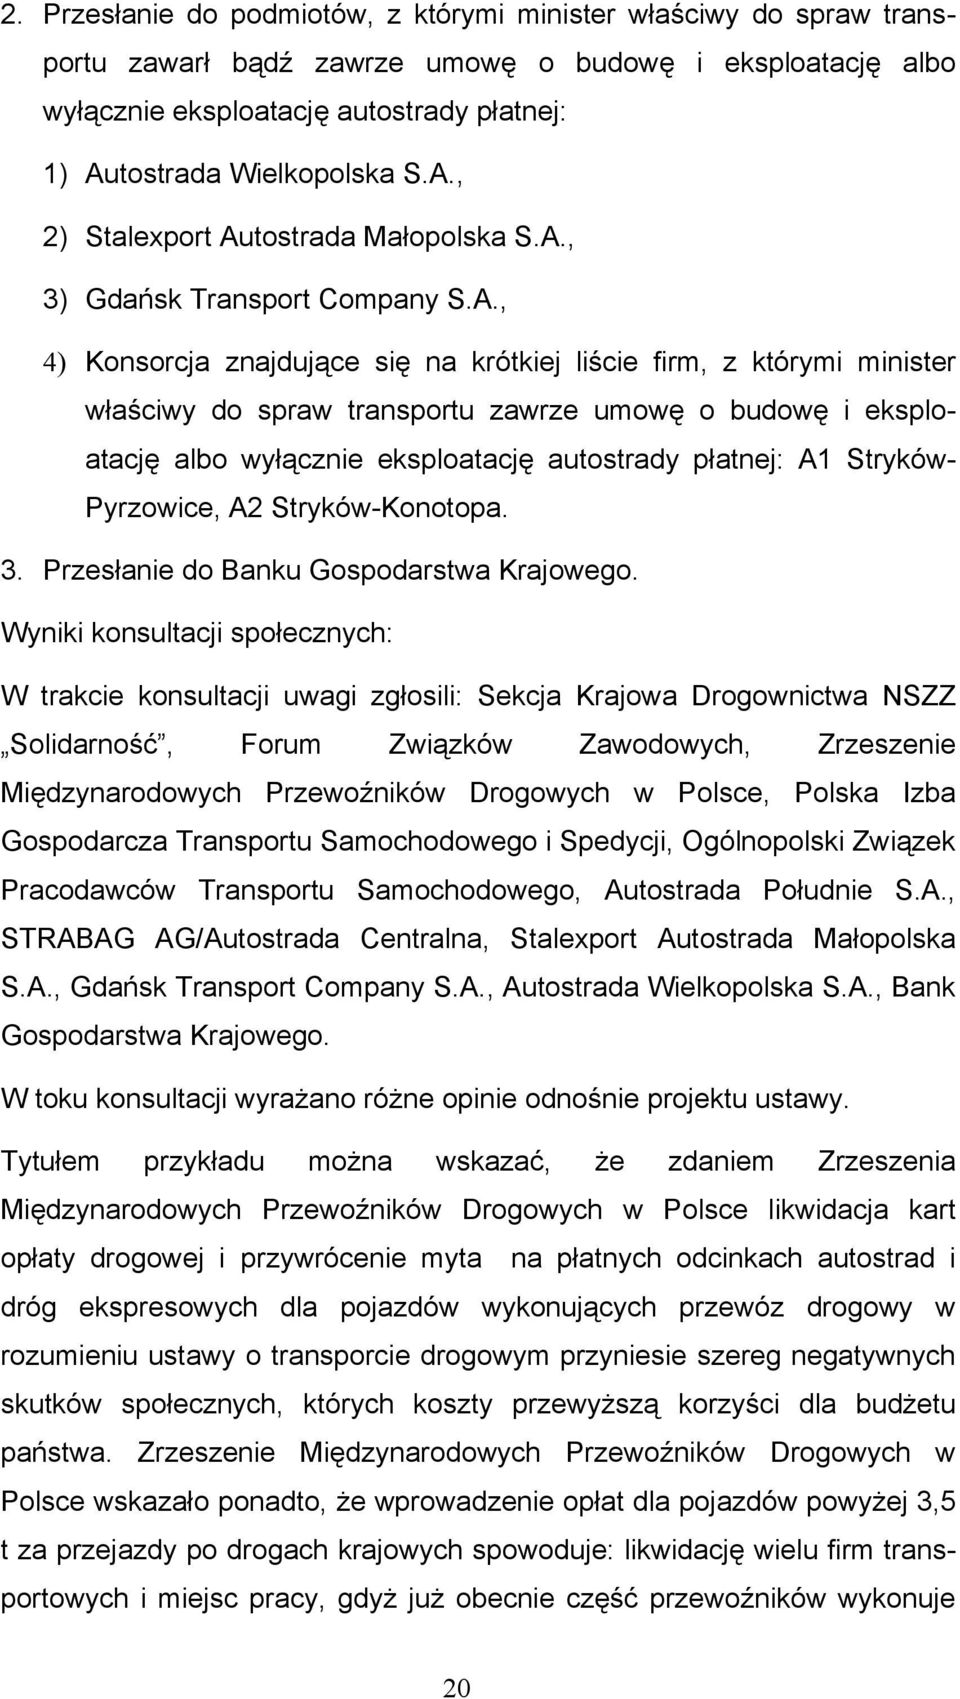 budowę i eksploatację albo wyłącznie eksploatację autostrady płatnej: A1 Stryków- Pyrzowice, A2 Stryków-Konotopa. 3. Przesłanie do Banku Gospodarstwa Krajowego.